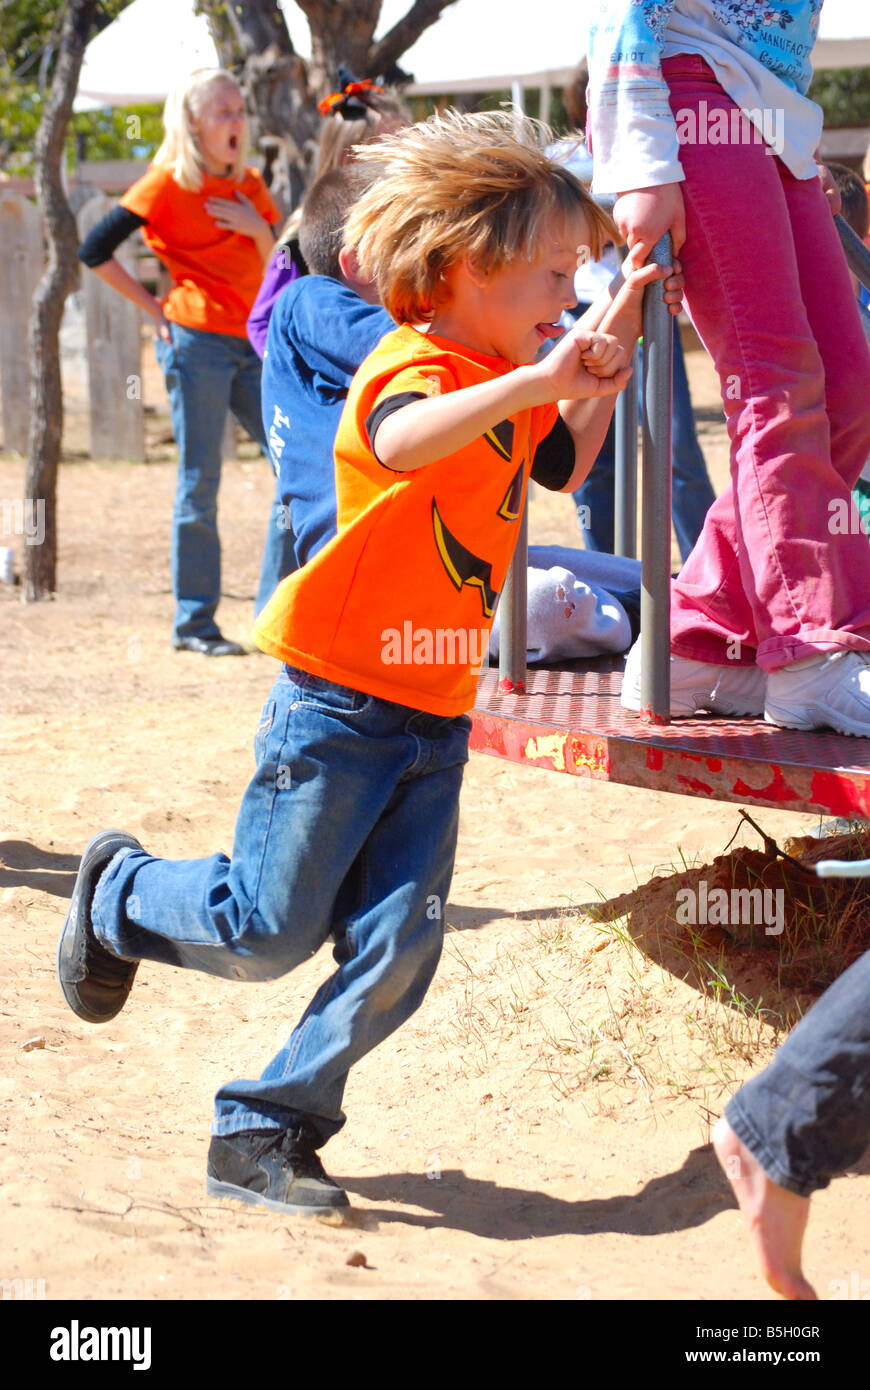 Petit garçon aux côtés de course d'un manège sur une aire de jeux Banque D'Images